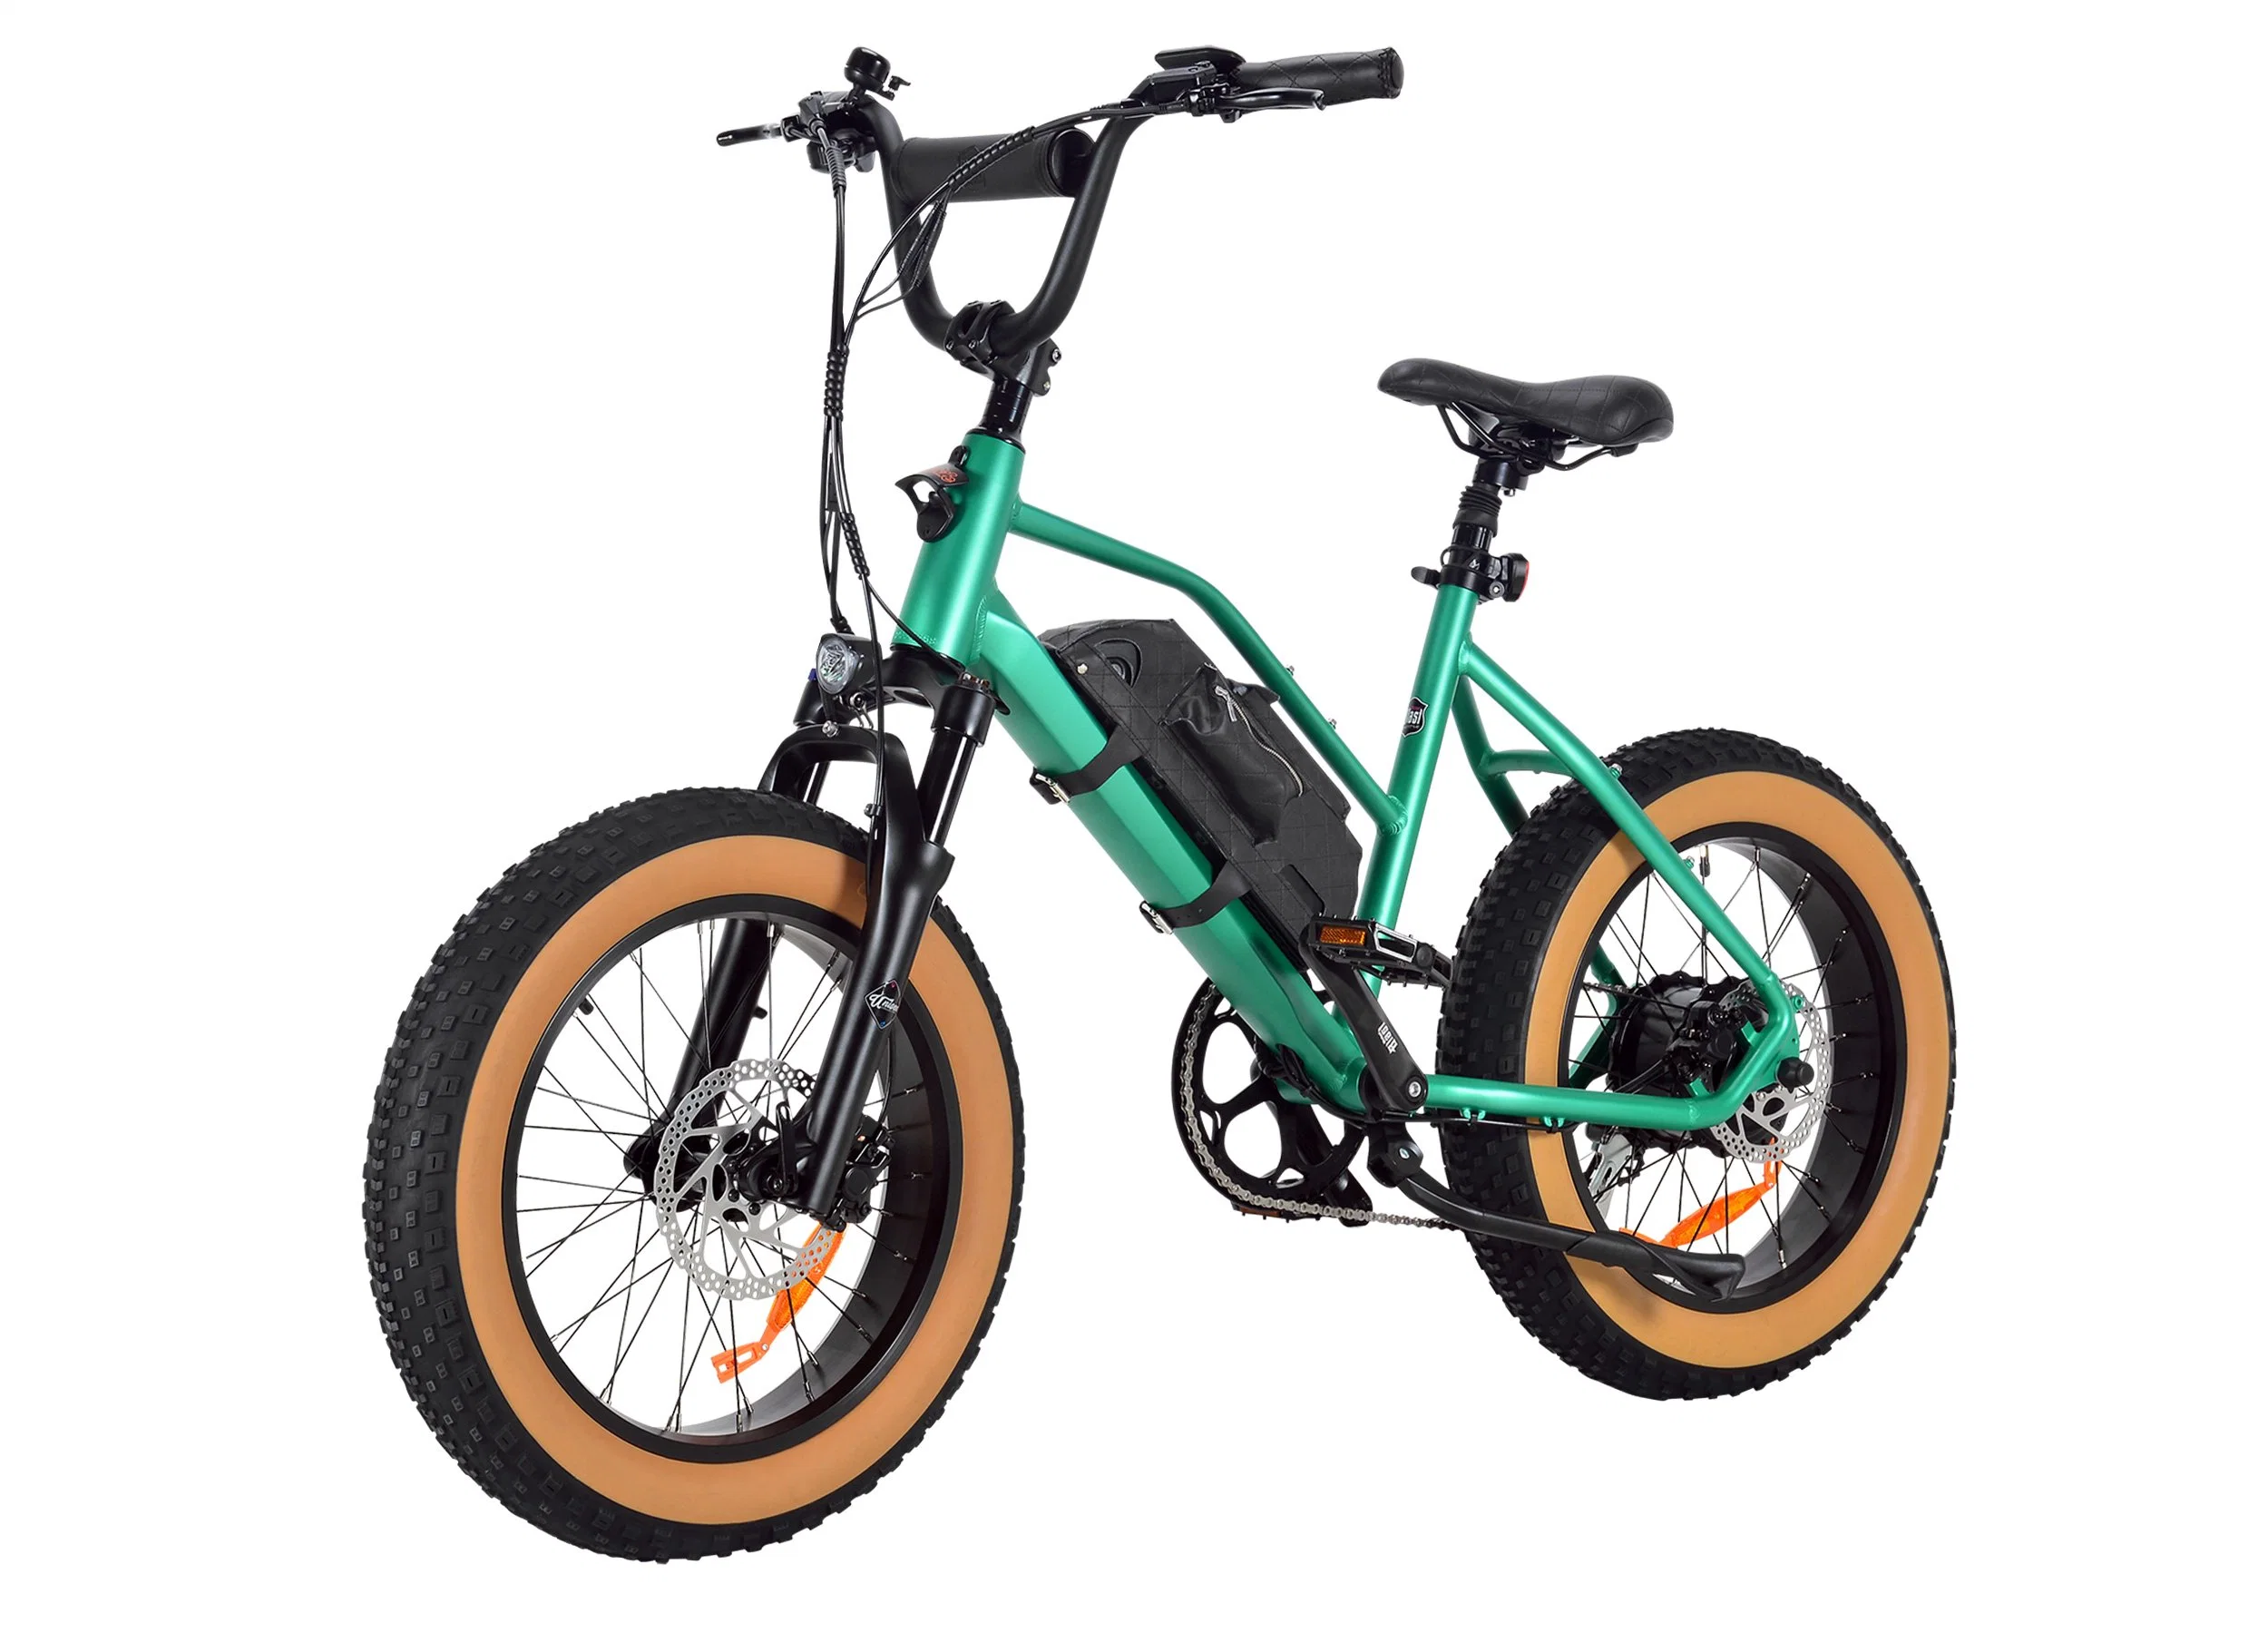 Nouveau Soda Ebike pour Cyclelove Unisize Dirt Ebike conçu avec Vélo électrique tout terrain 350 W 48 V 13 ah